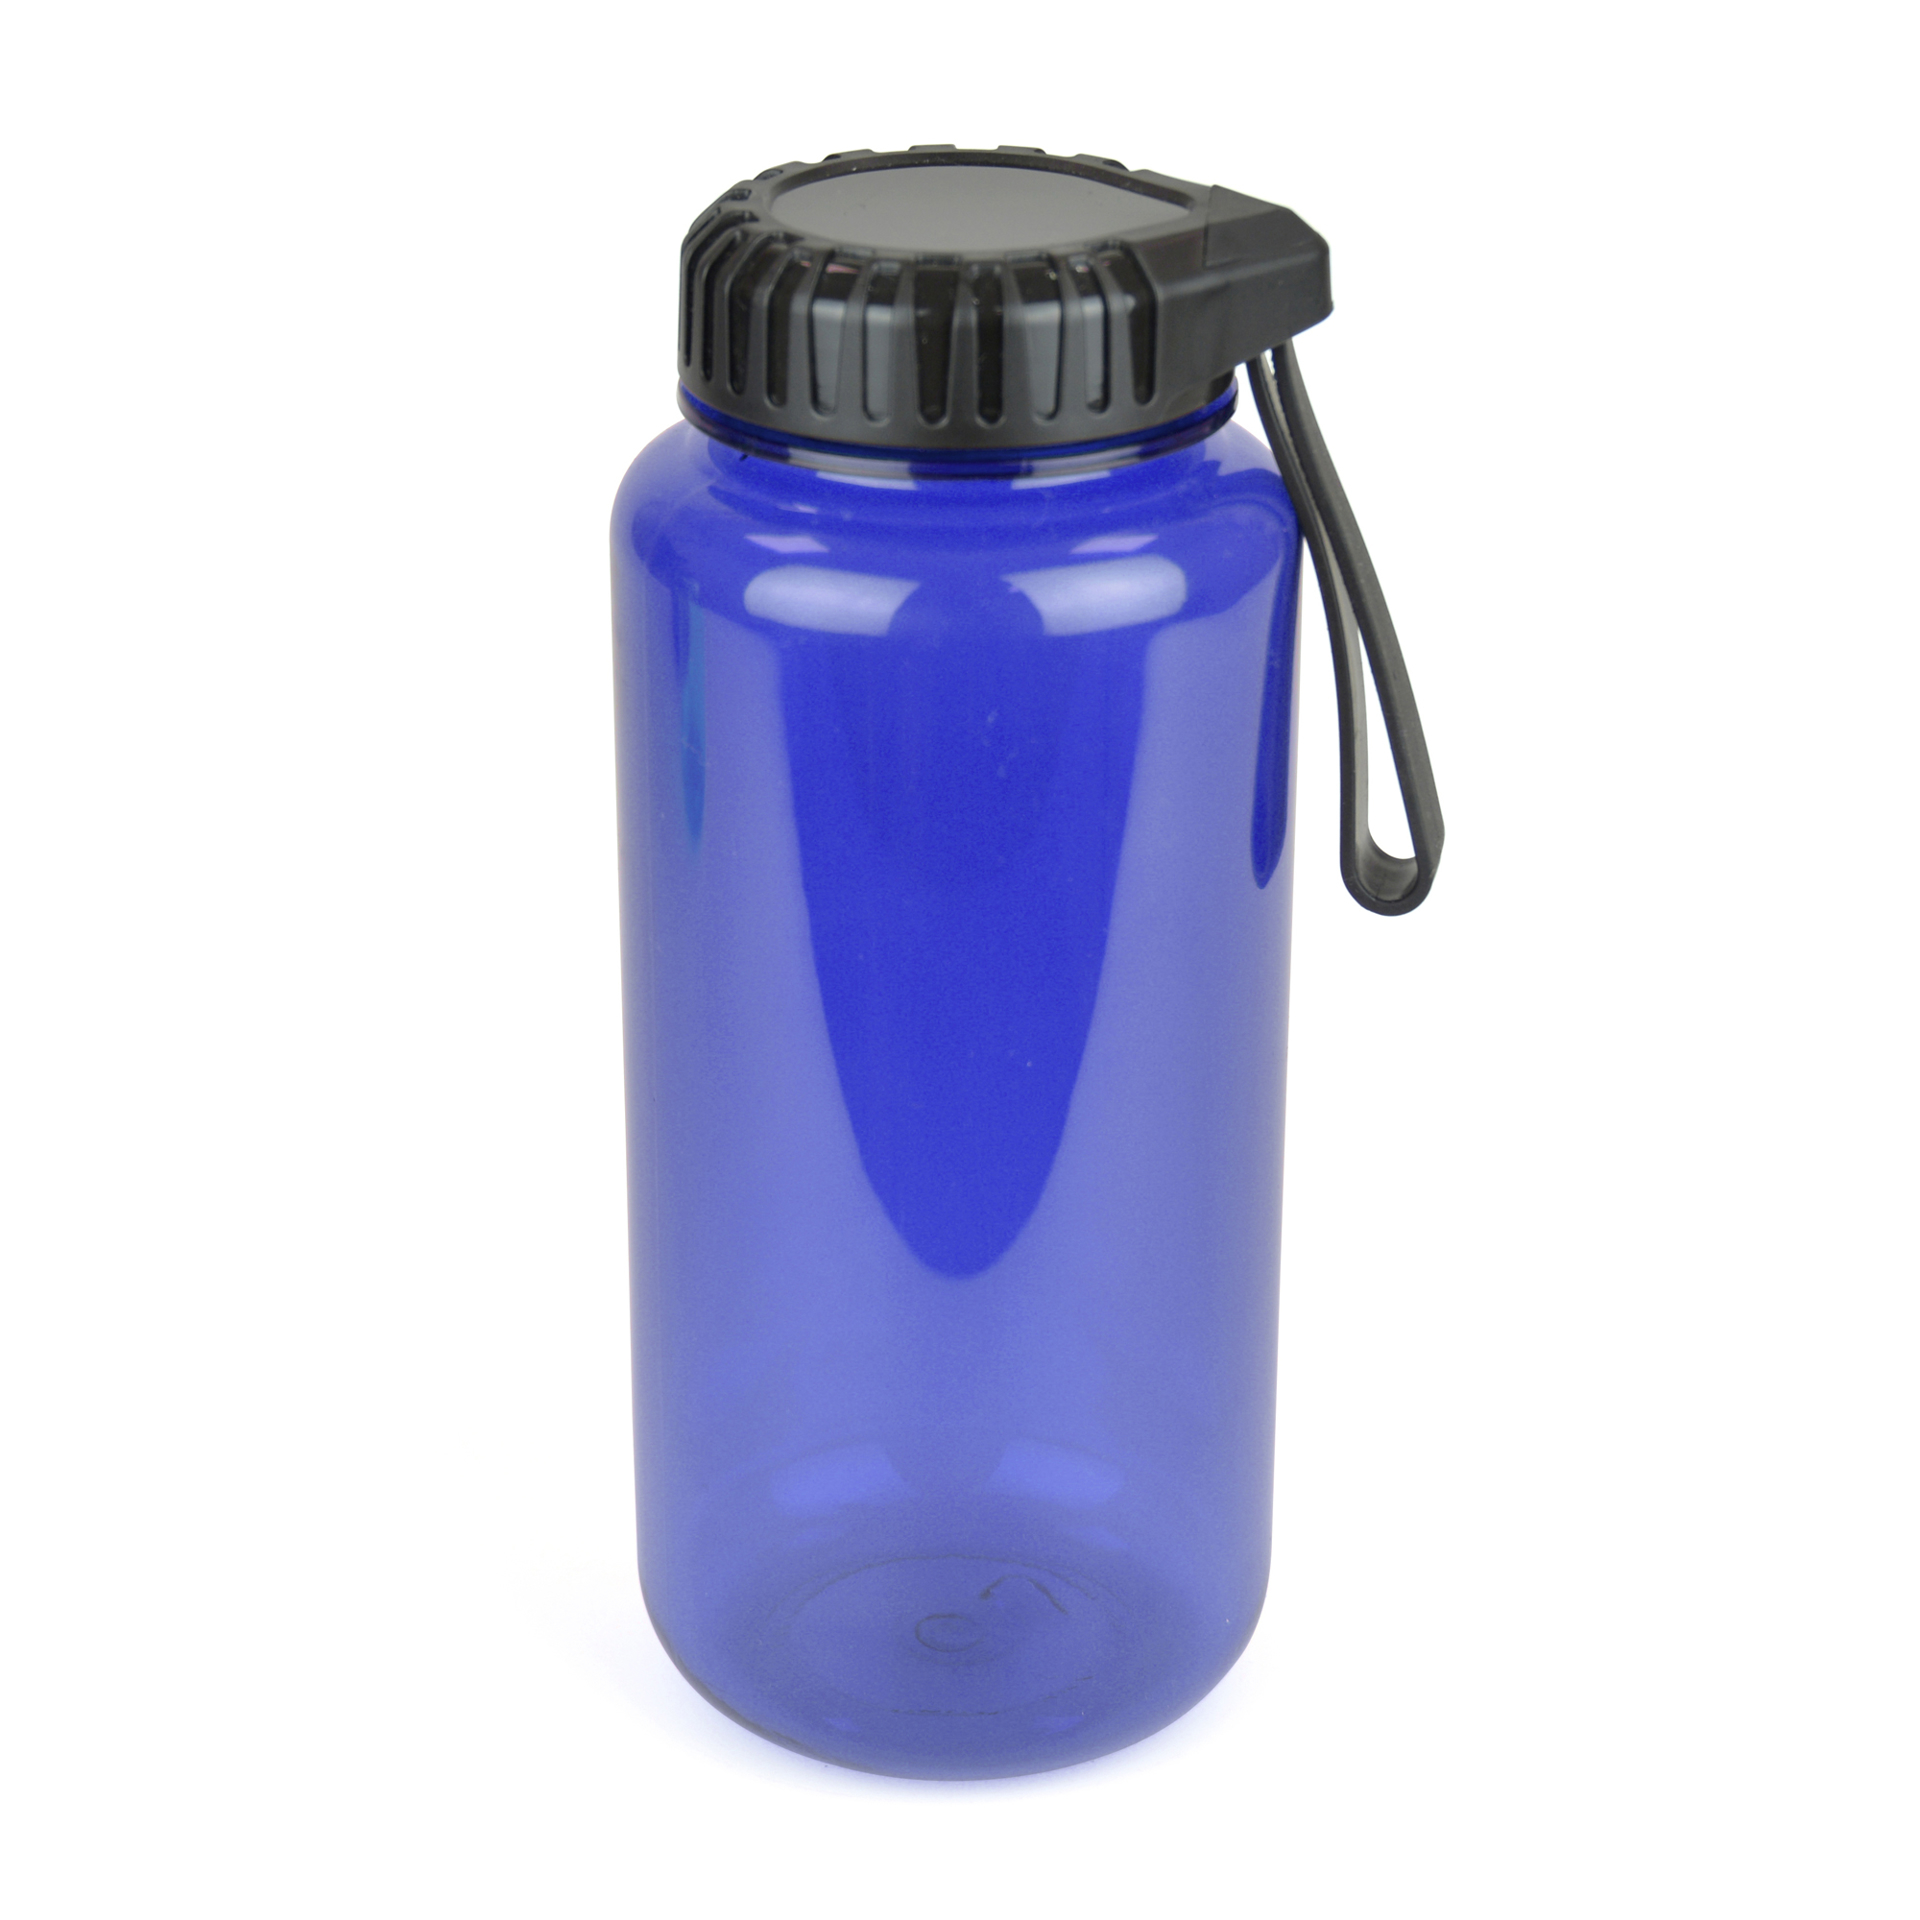 Gowing Sports bottle blue body black lid